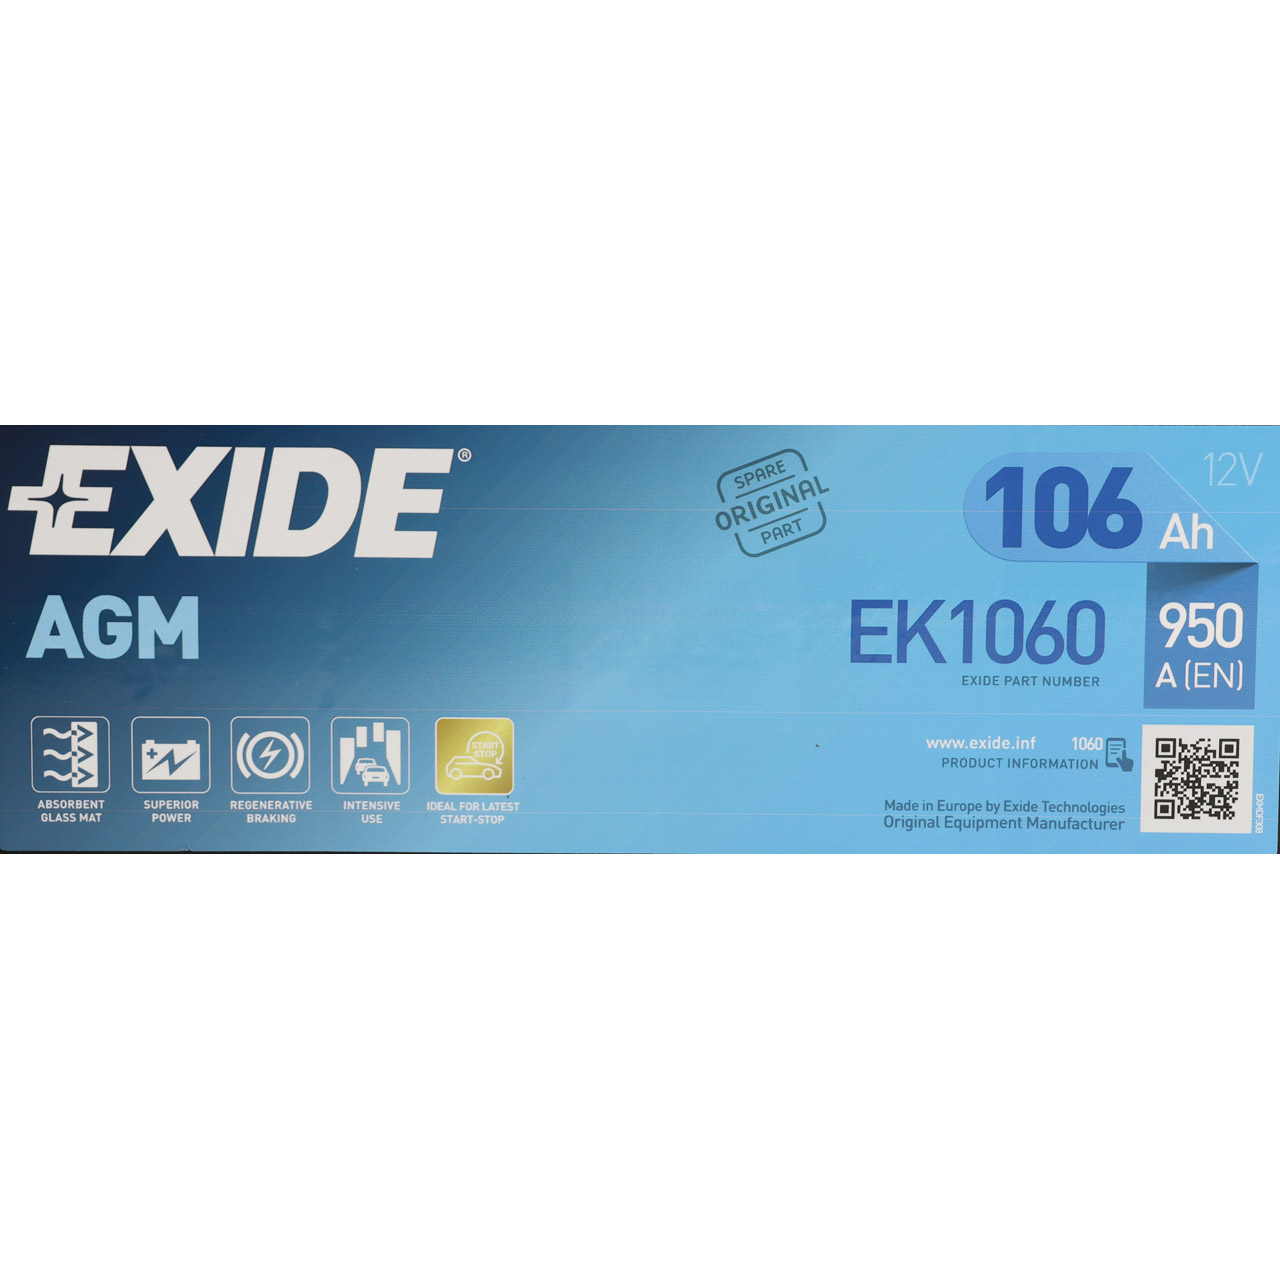 EXIDE EK1060 AGM START-STOP Autobatterie Batterie Starterbatterie 12V 106Ah EN950A